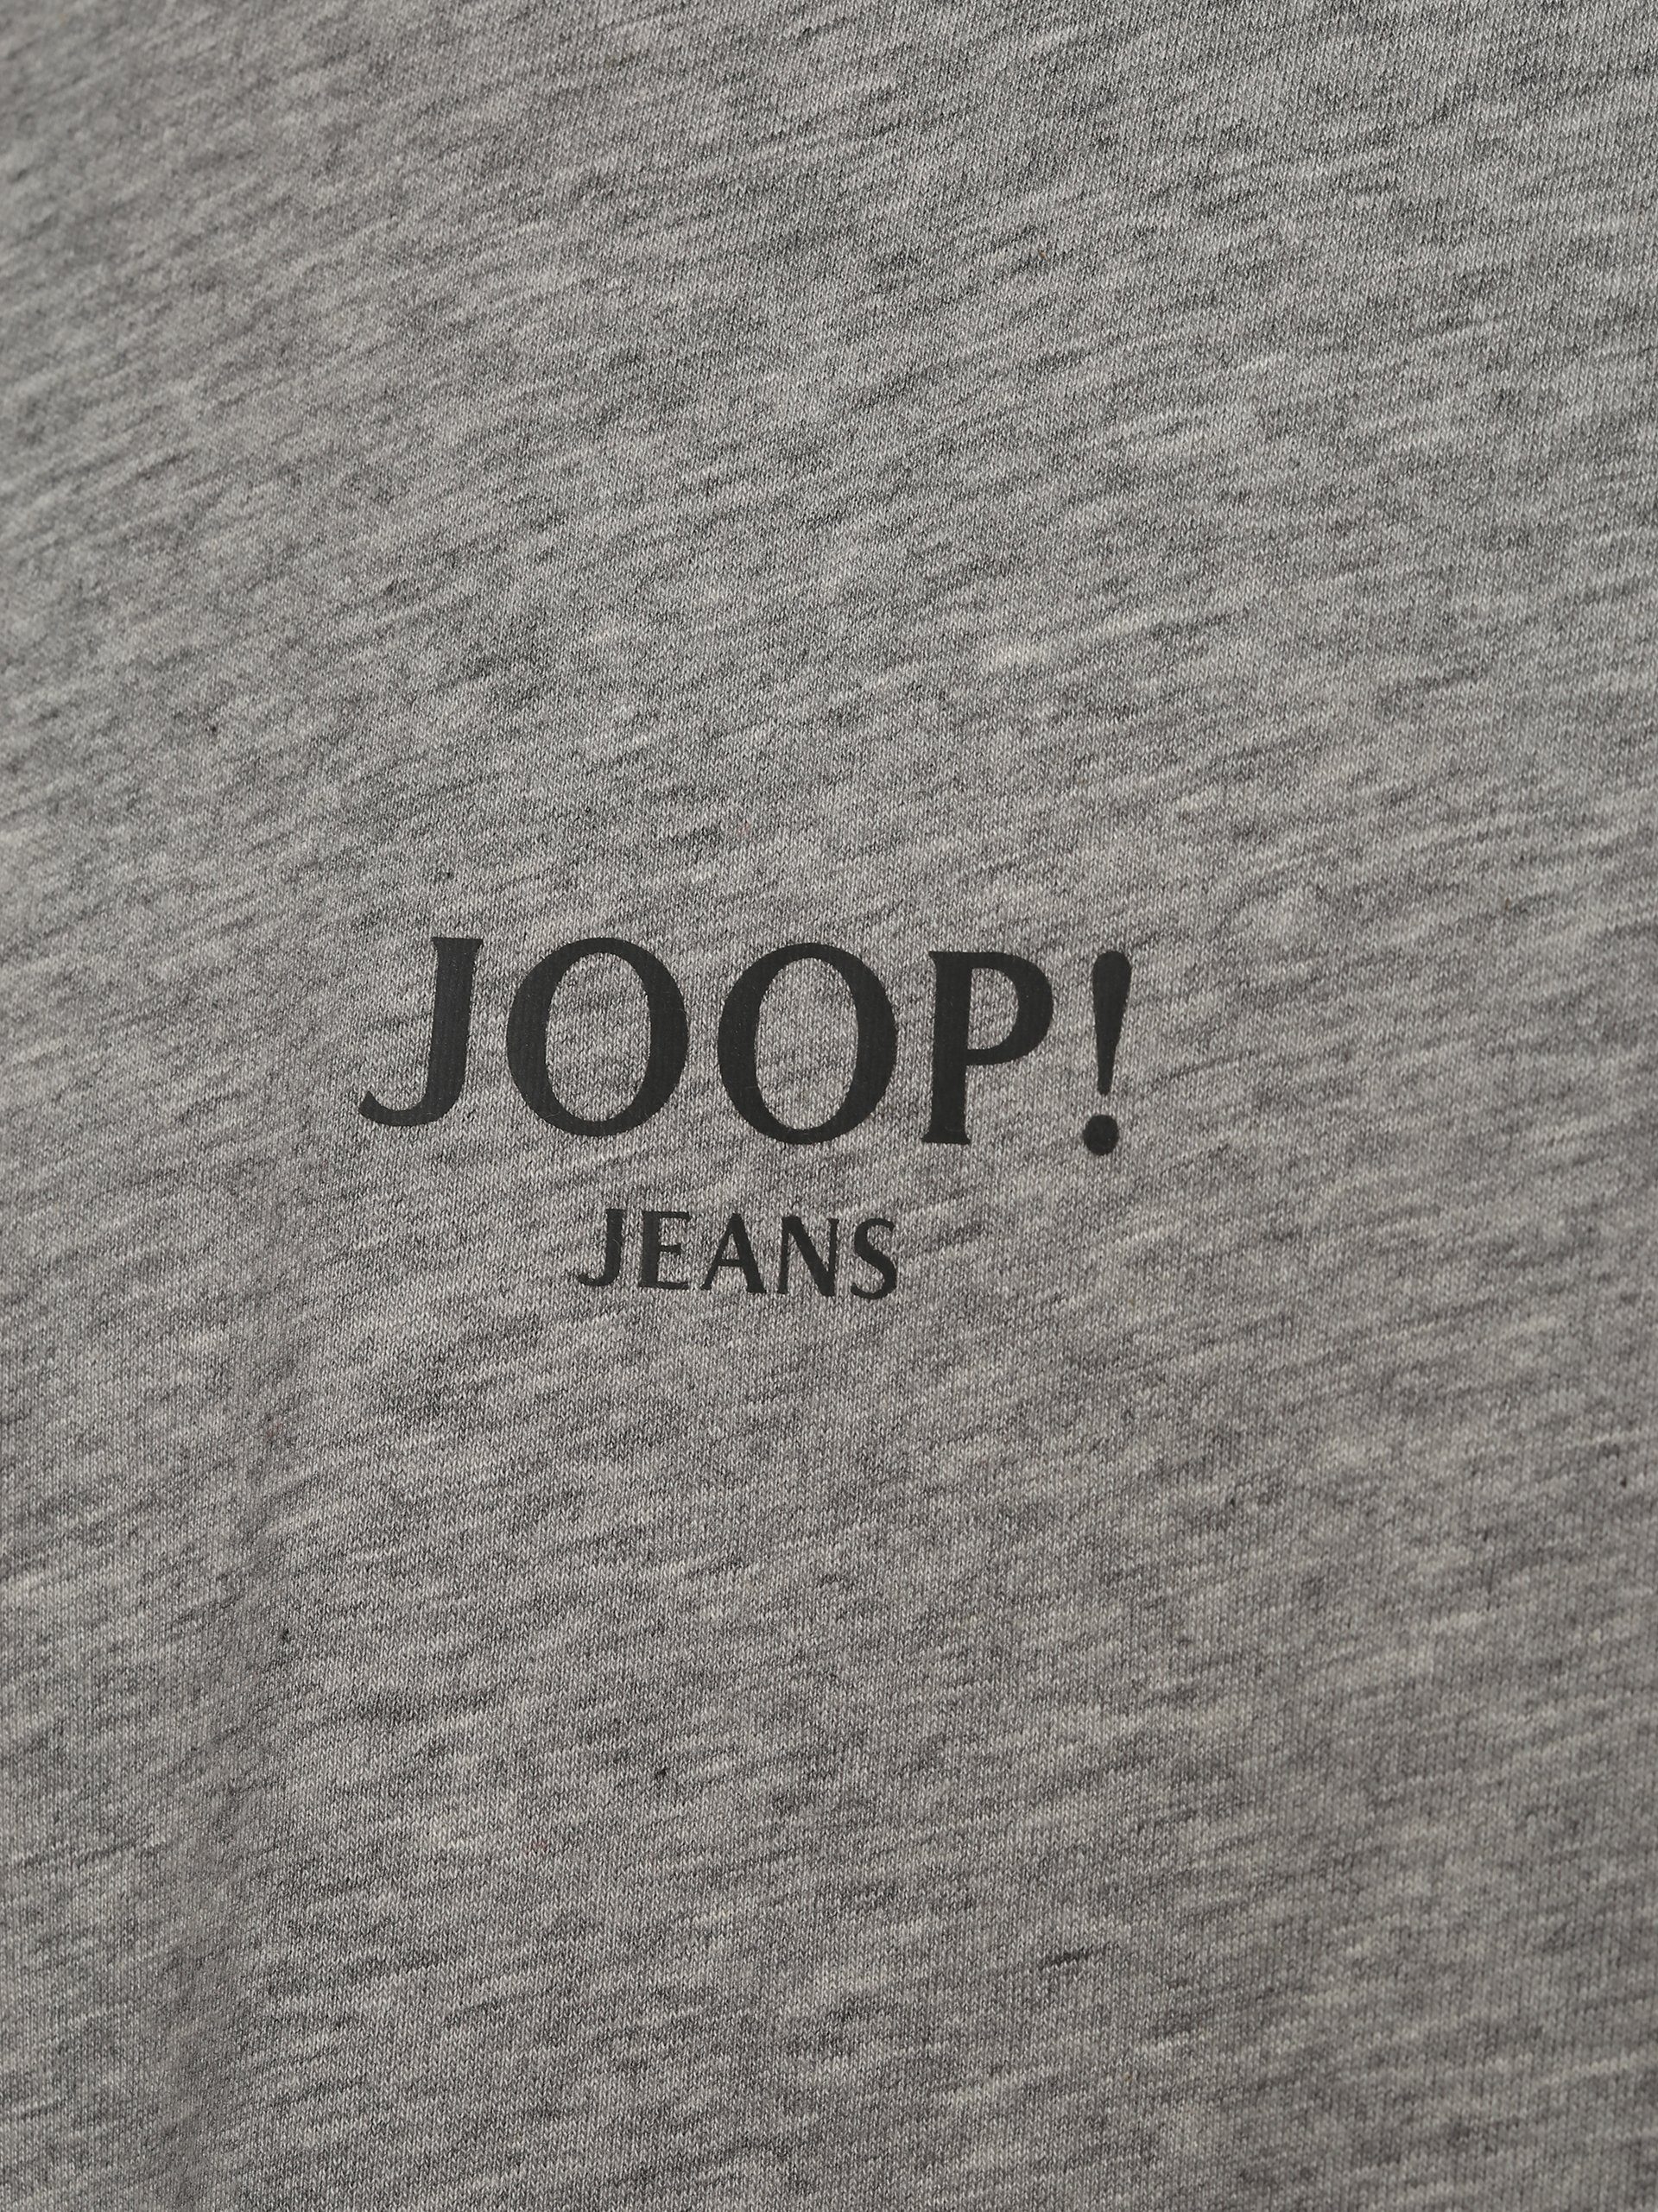 T-Shirt grau Joop!